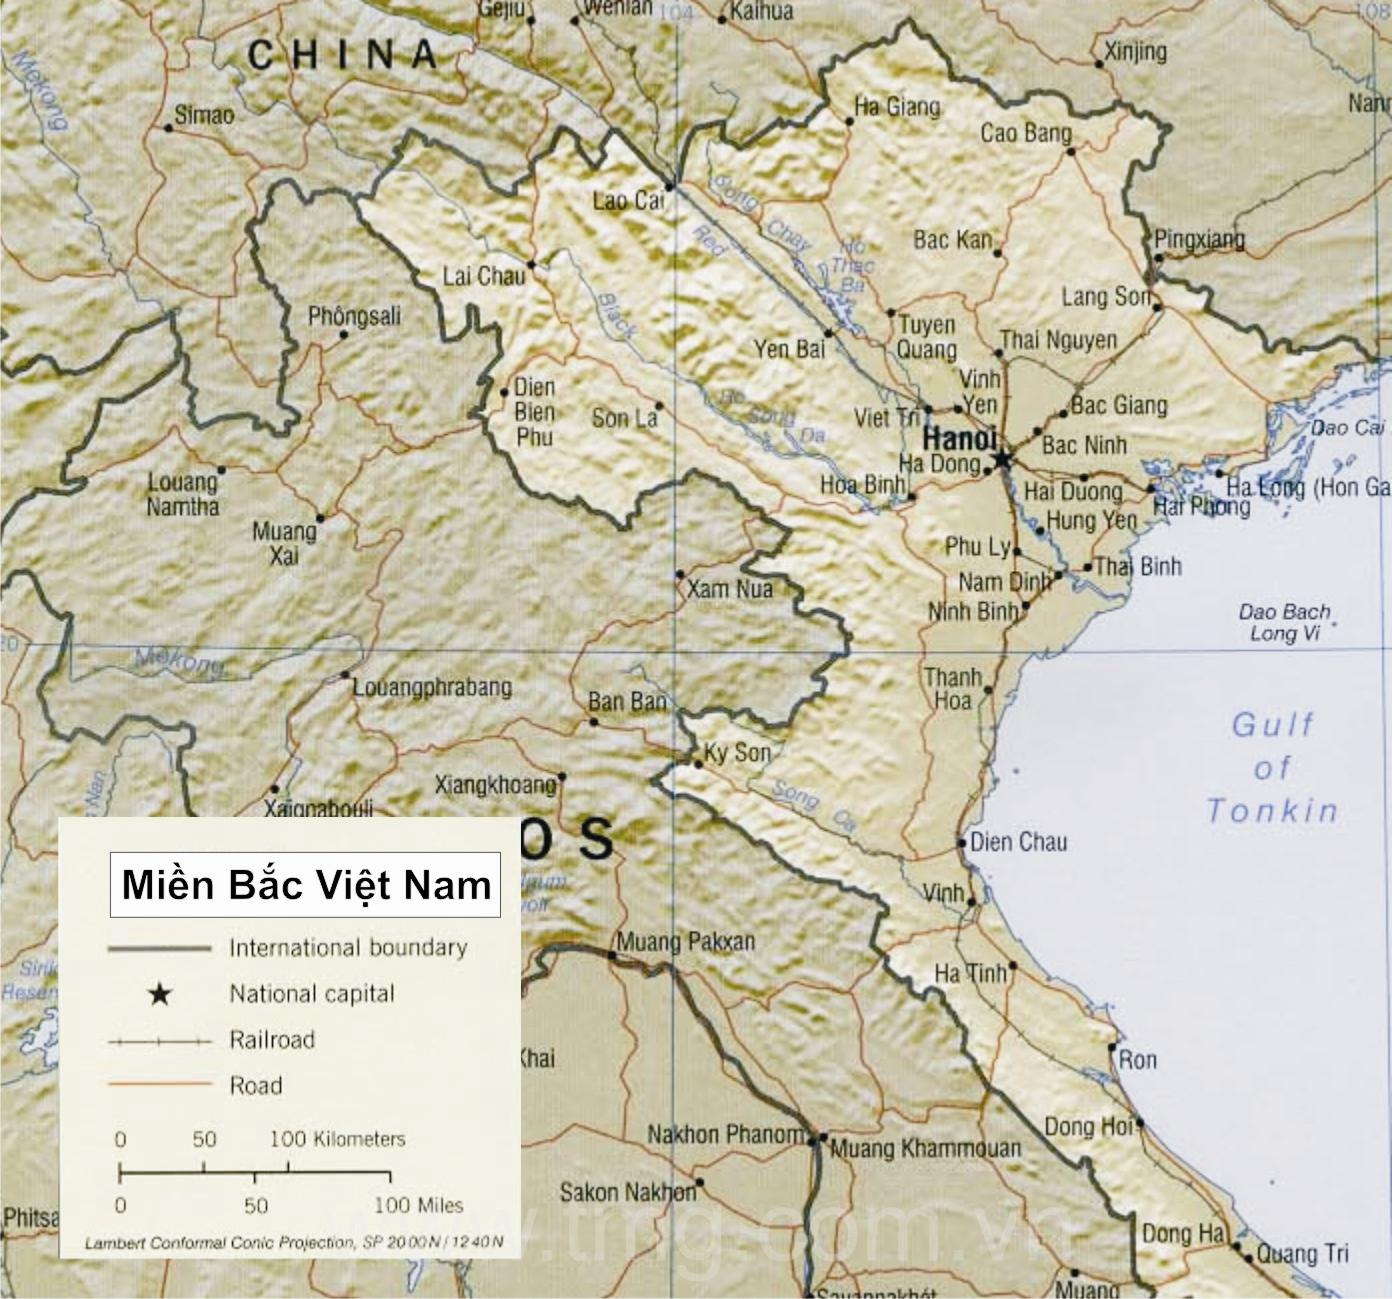 Miền Bắc (Việt Nam) – Wikipedia Tiếng Việt